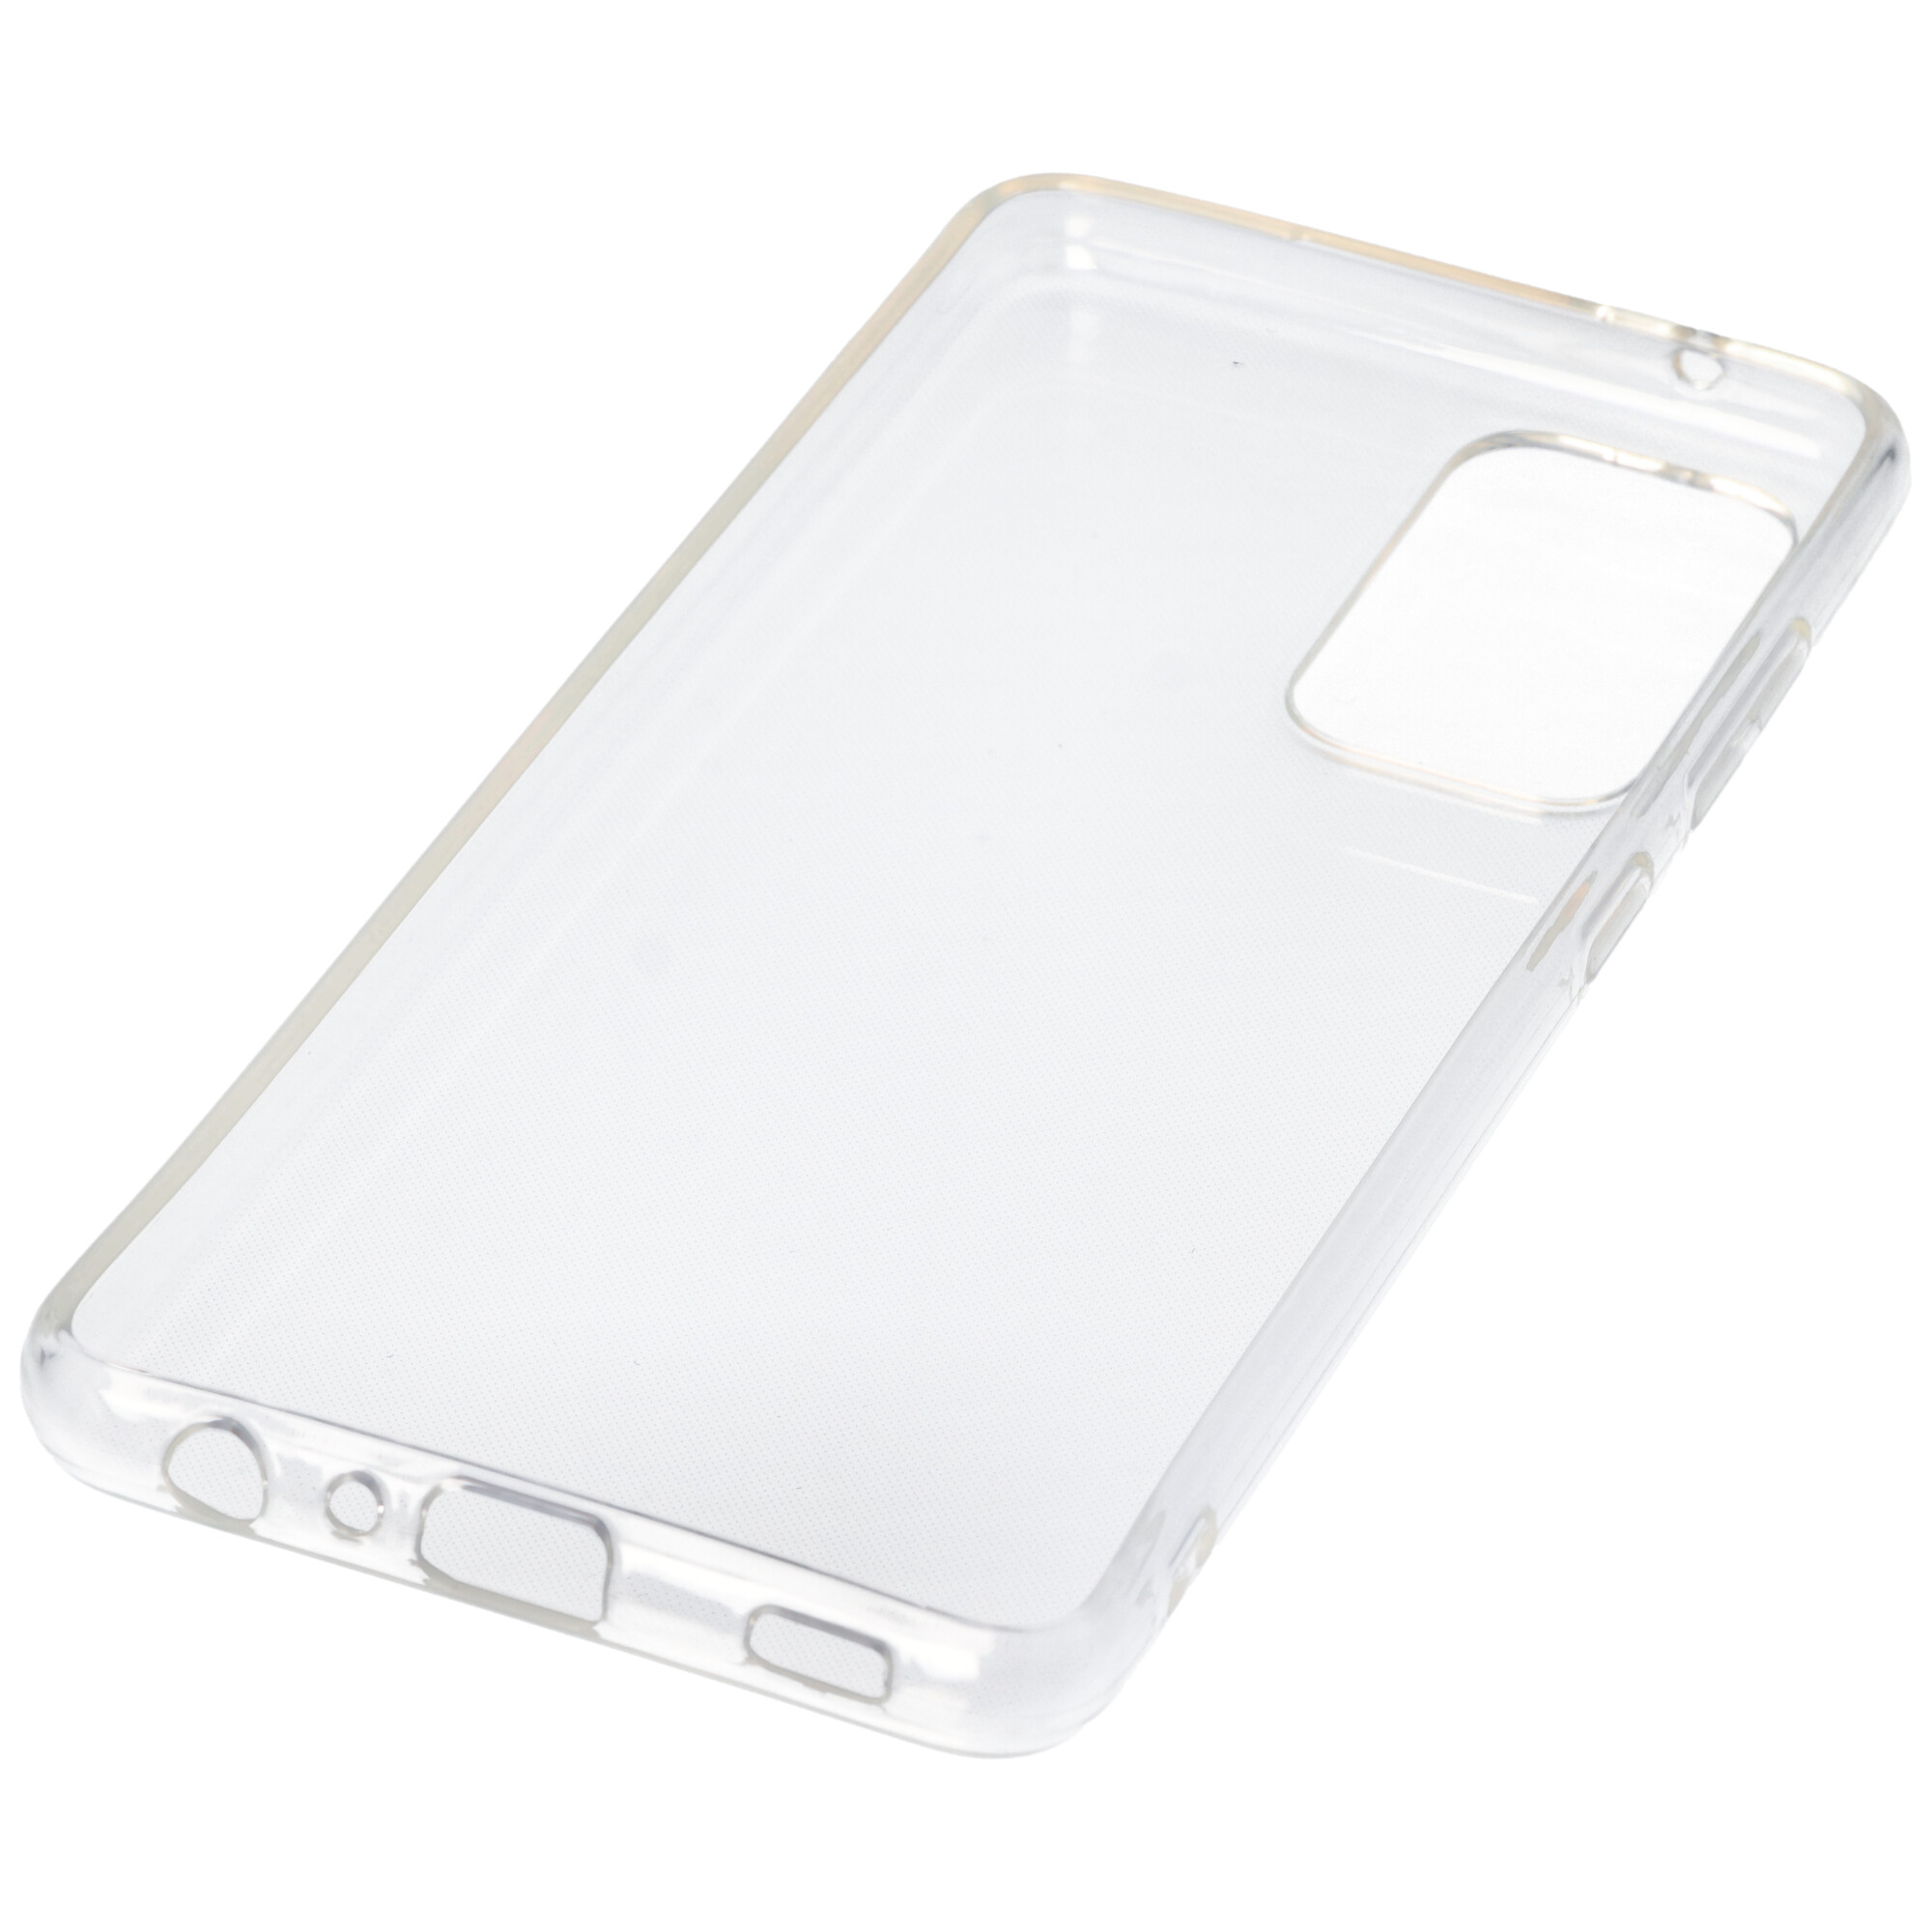 Hülle passend für Samsung Galaxy A52 - transparente Schutzhülle, Anti-Gelb Luftkissen Fallschutz Silikon Handyhülle robustes TPU Case